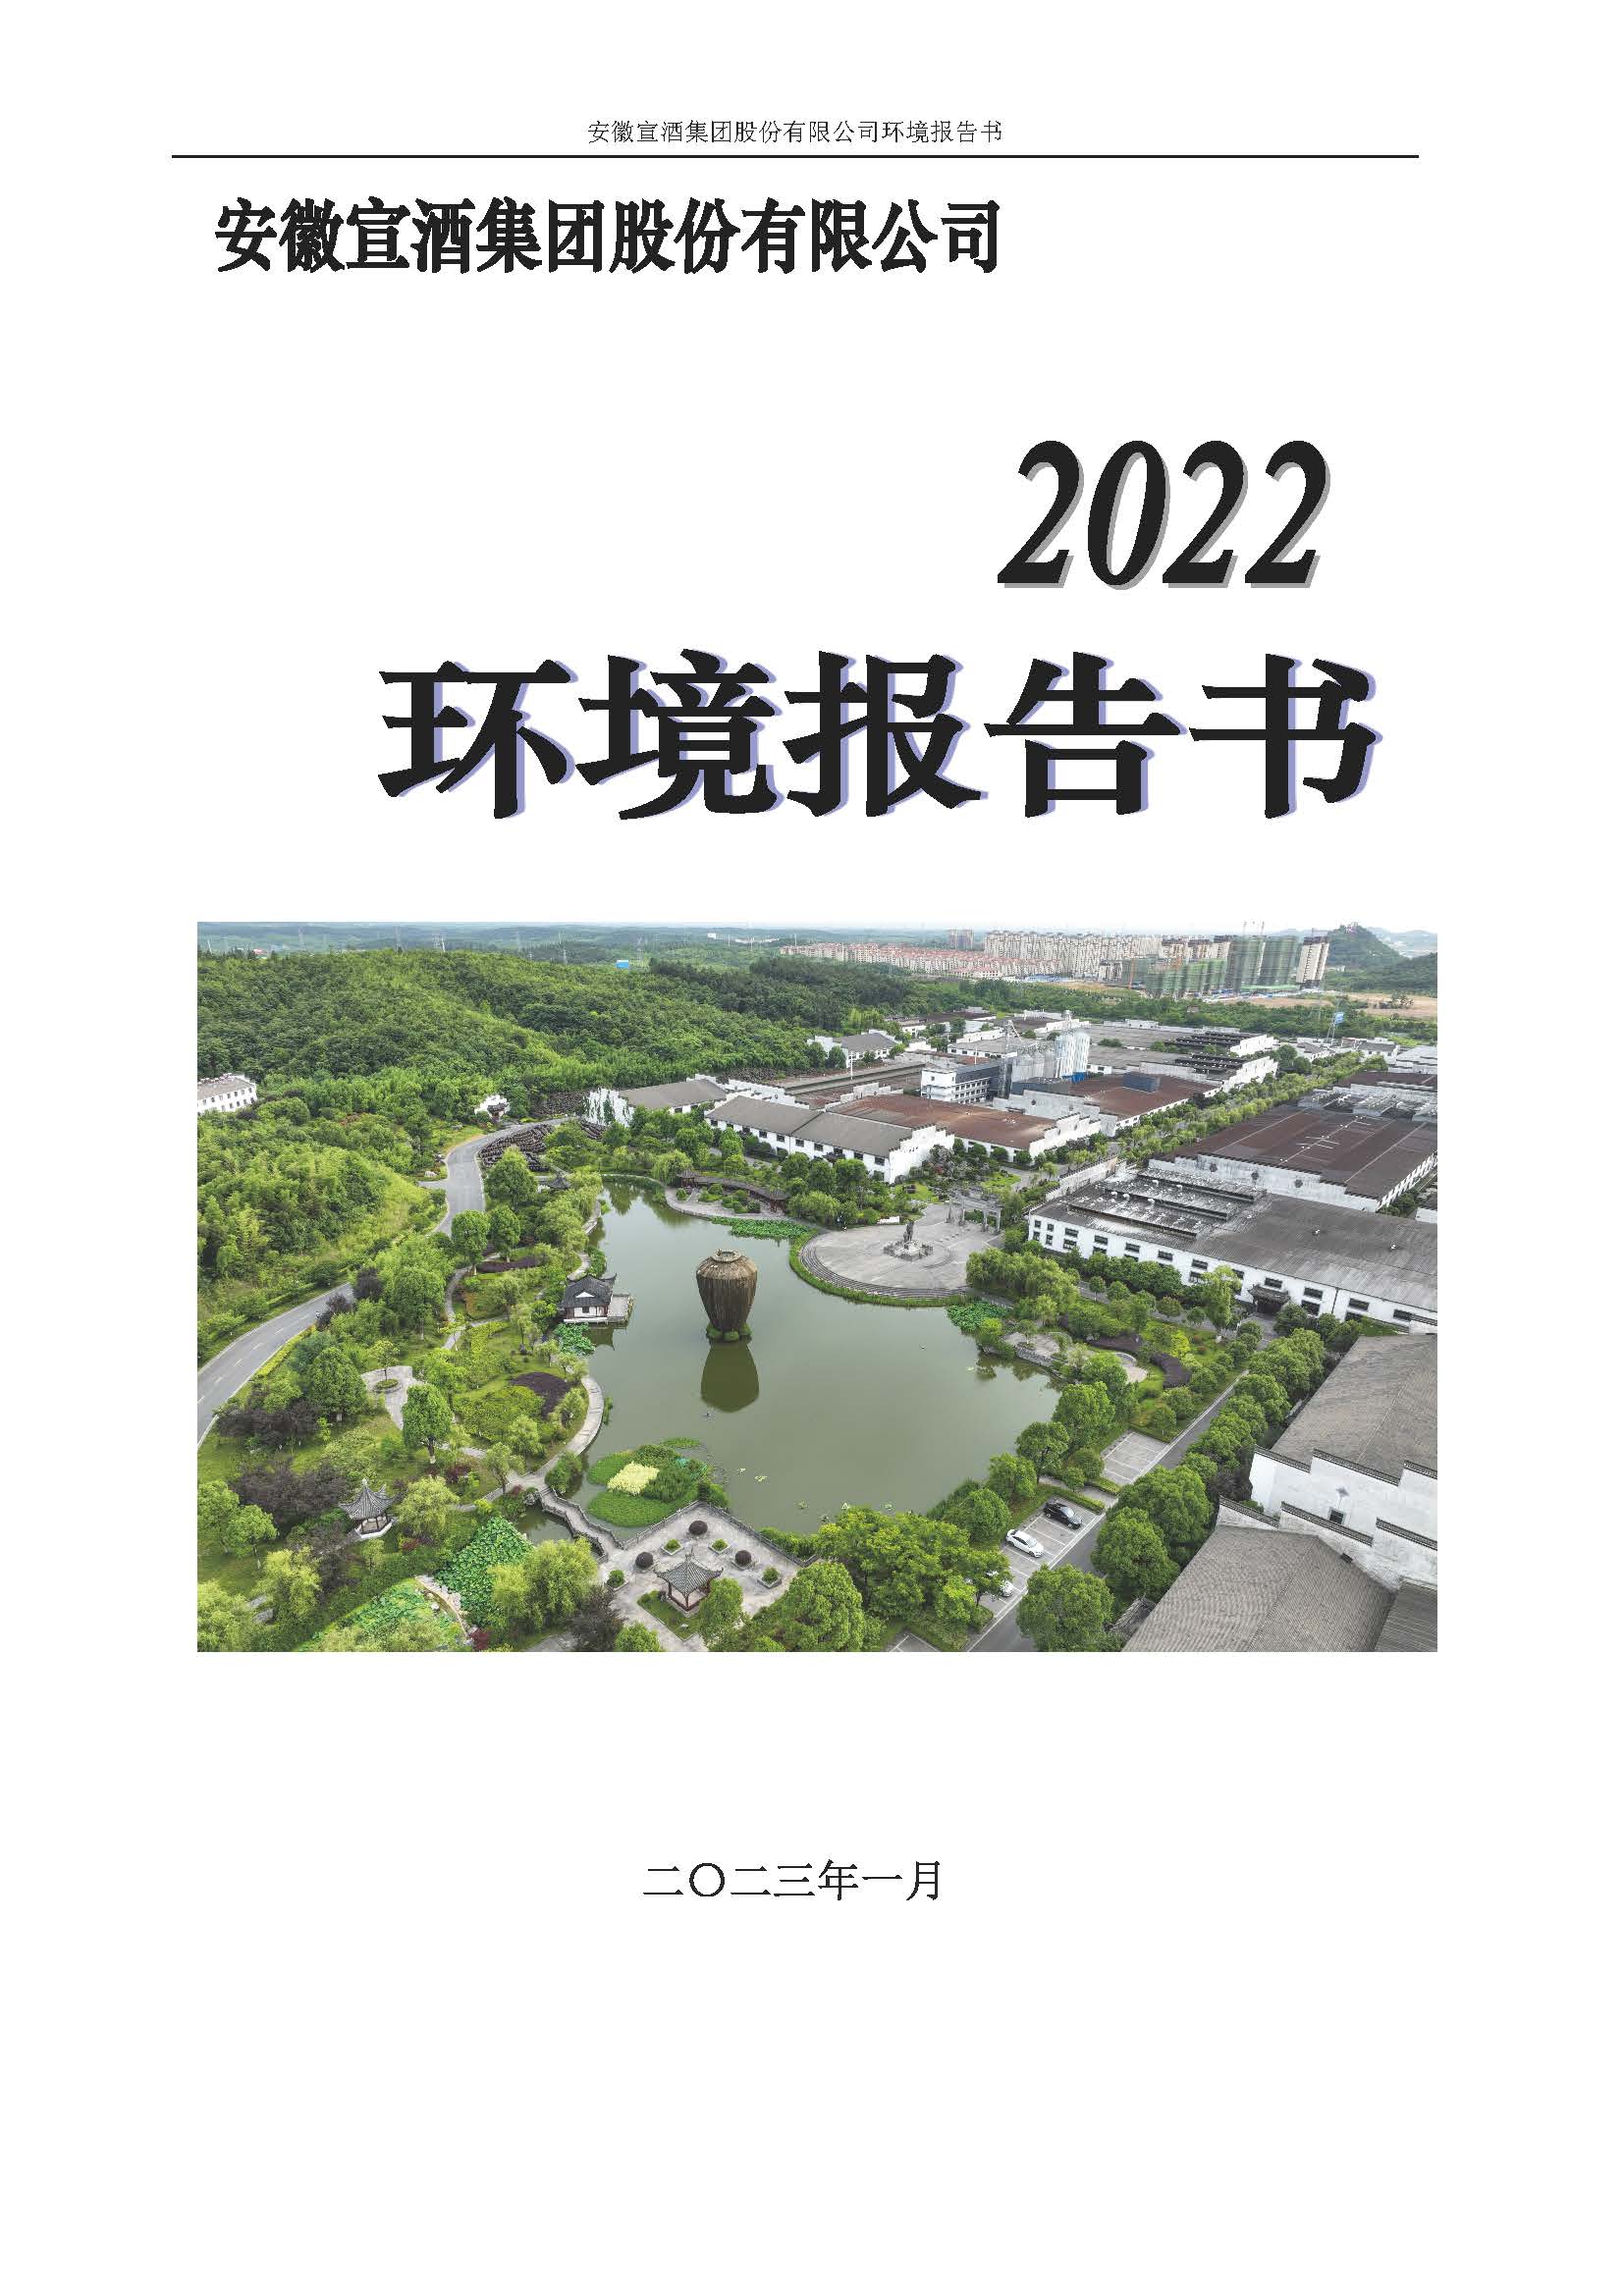 2022宣酒集团环境报告书(1)_页面_01.jpg